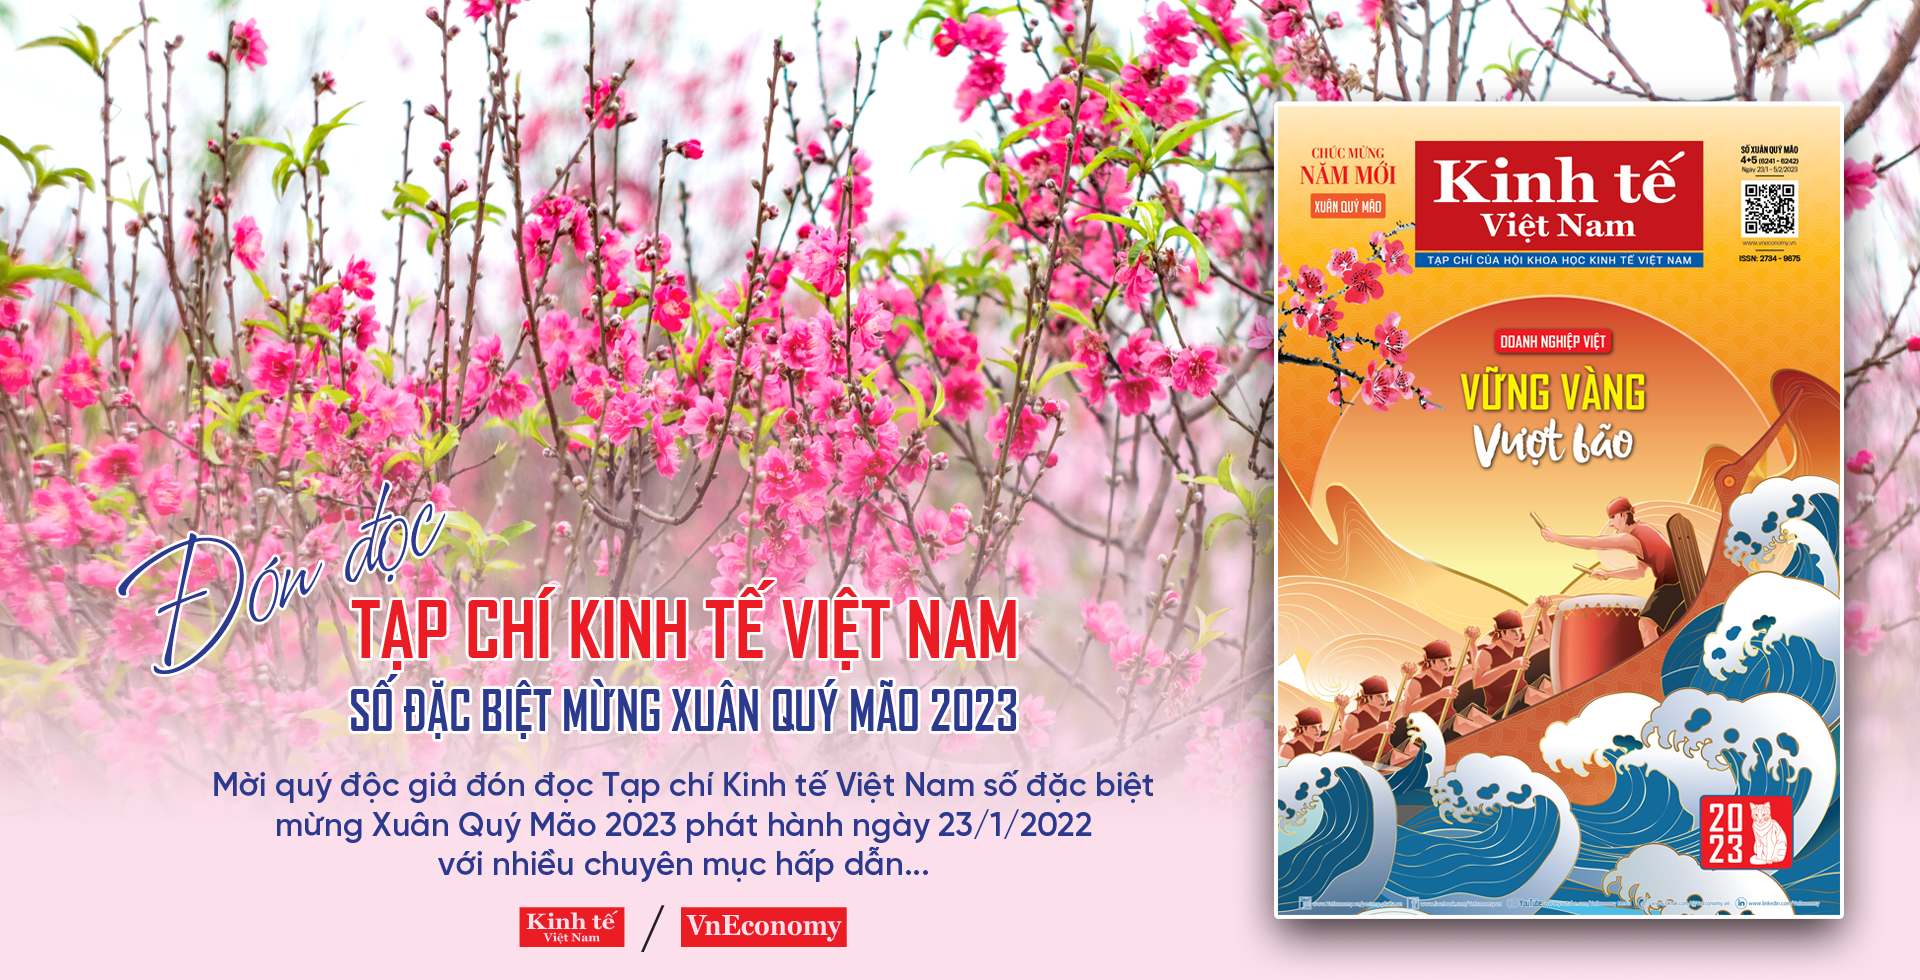 Đón đọc Tạp chí Kinh tế Việt Nam số đặc biệt Xuân Quý Mão 2023 - Ảnh 1